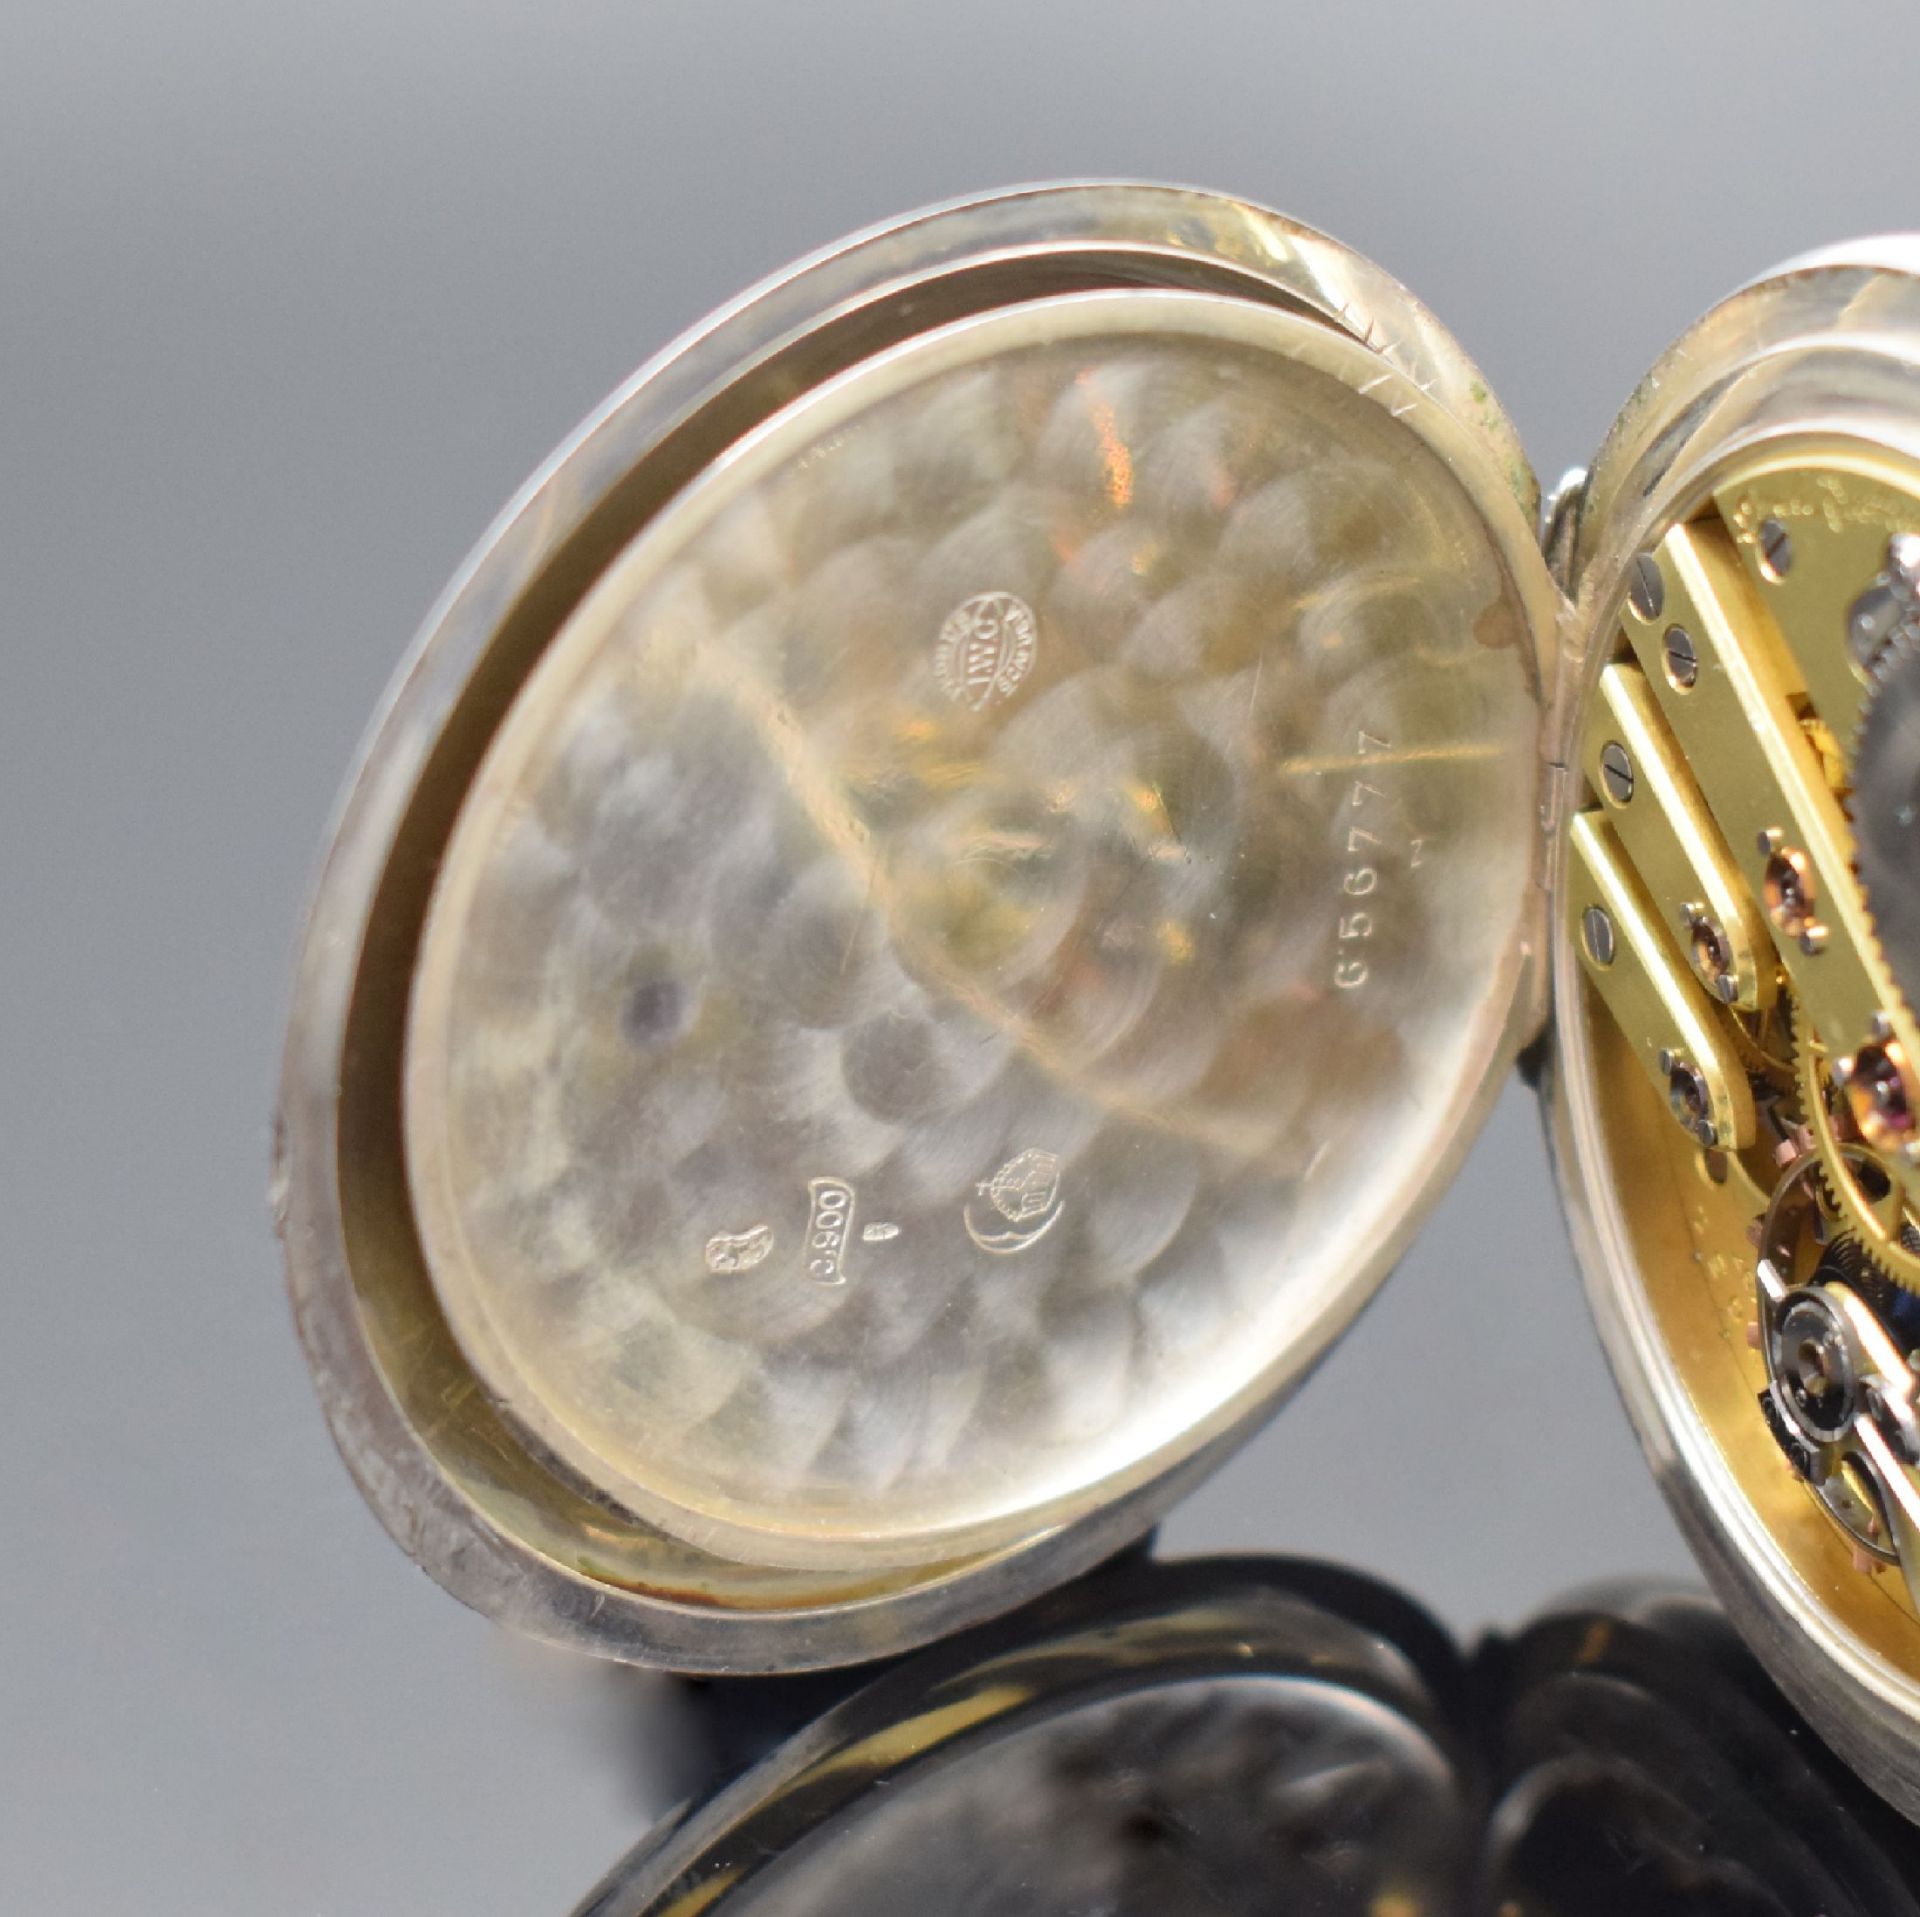 IWC 'Qualität Extra' seltene große Taschenuhr in Silber, - Image 5 of 6